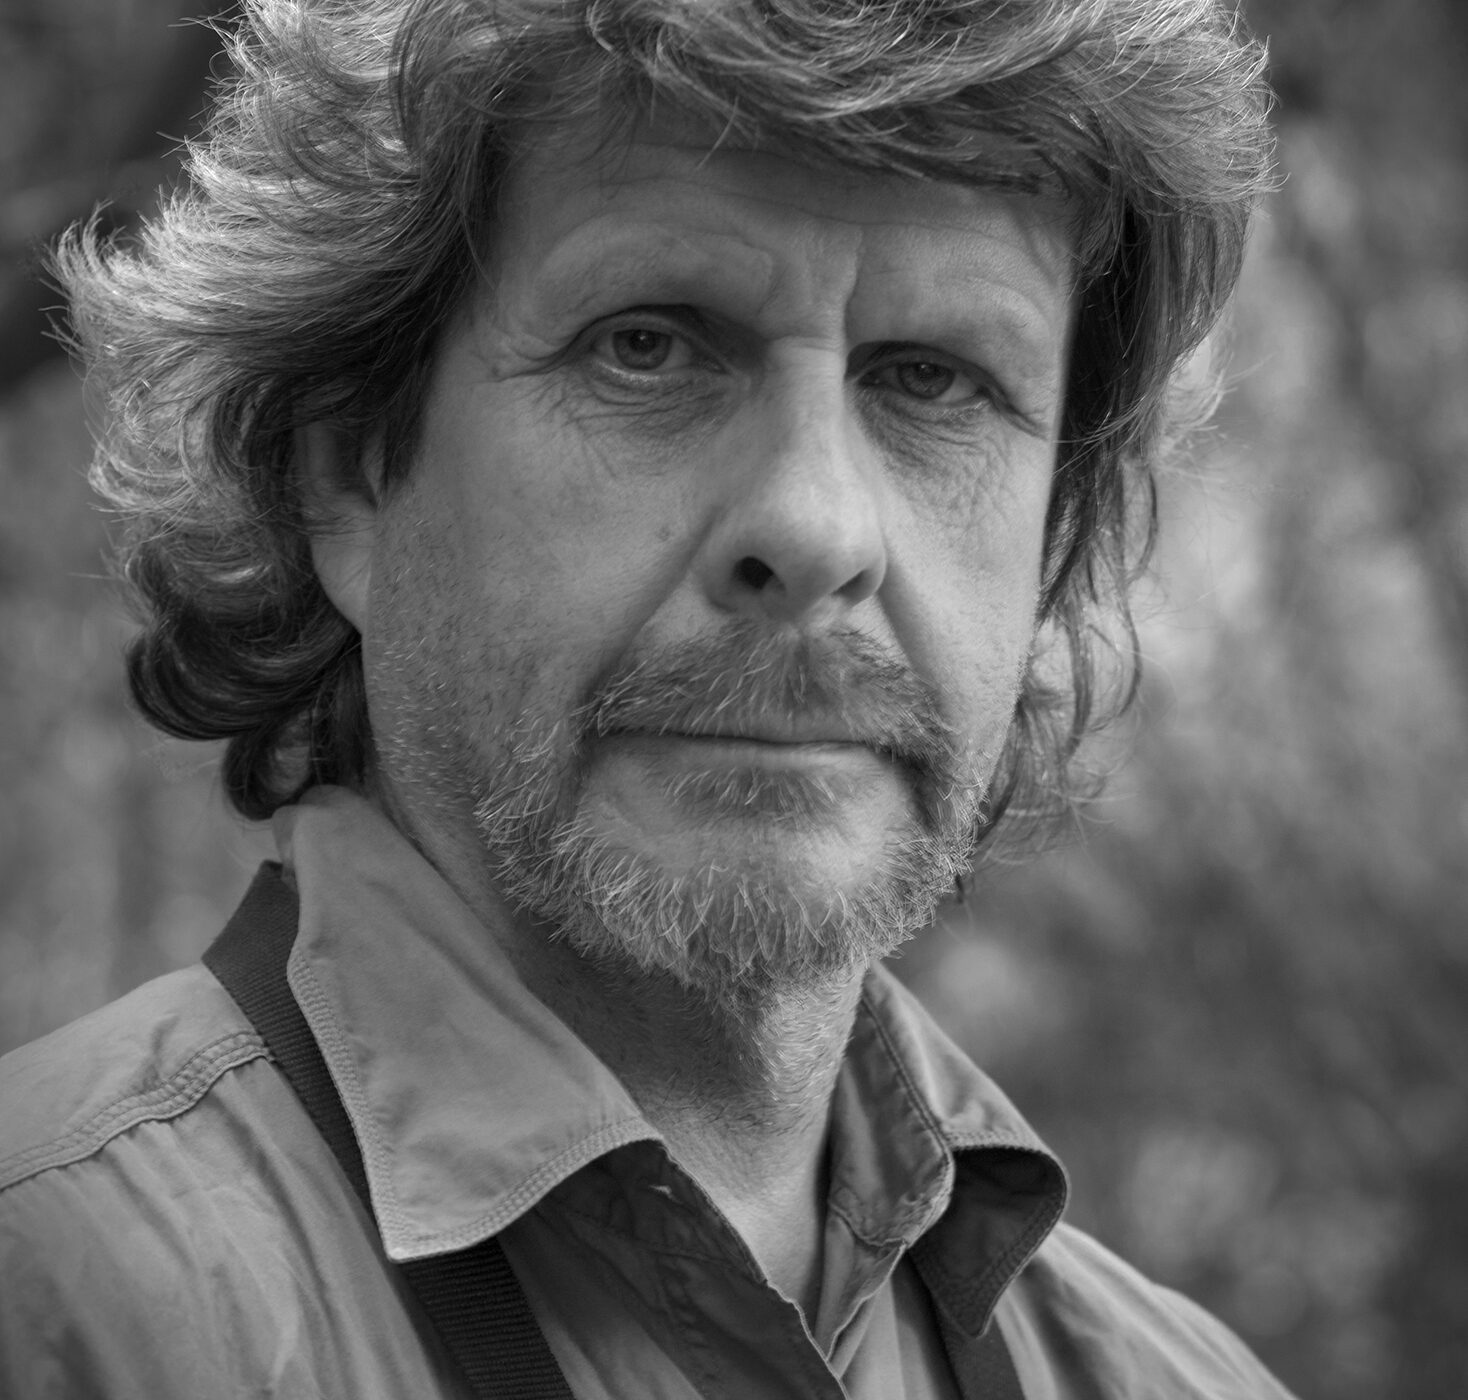 Fallece el fotógrafo y documentalista Juan Carlos Gedda Ortiz, cocreador del mítico “Al sur del Mundo”